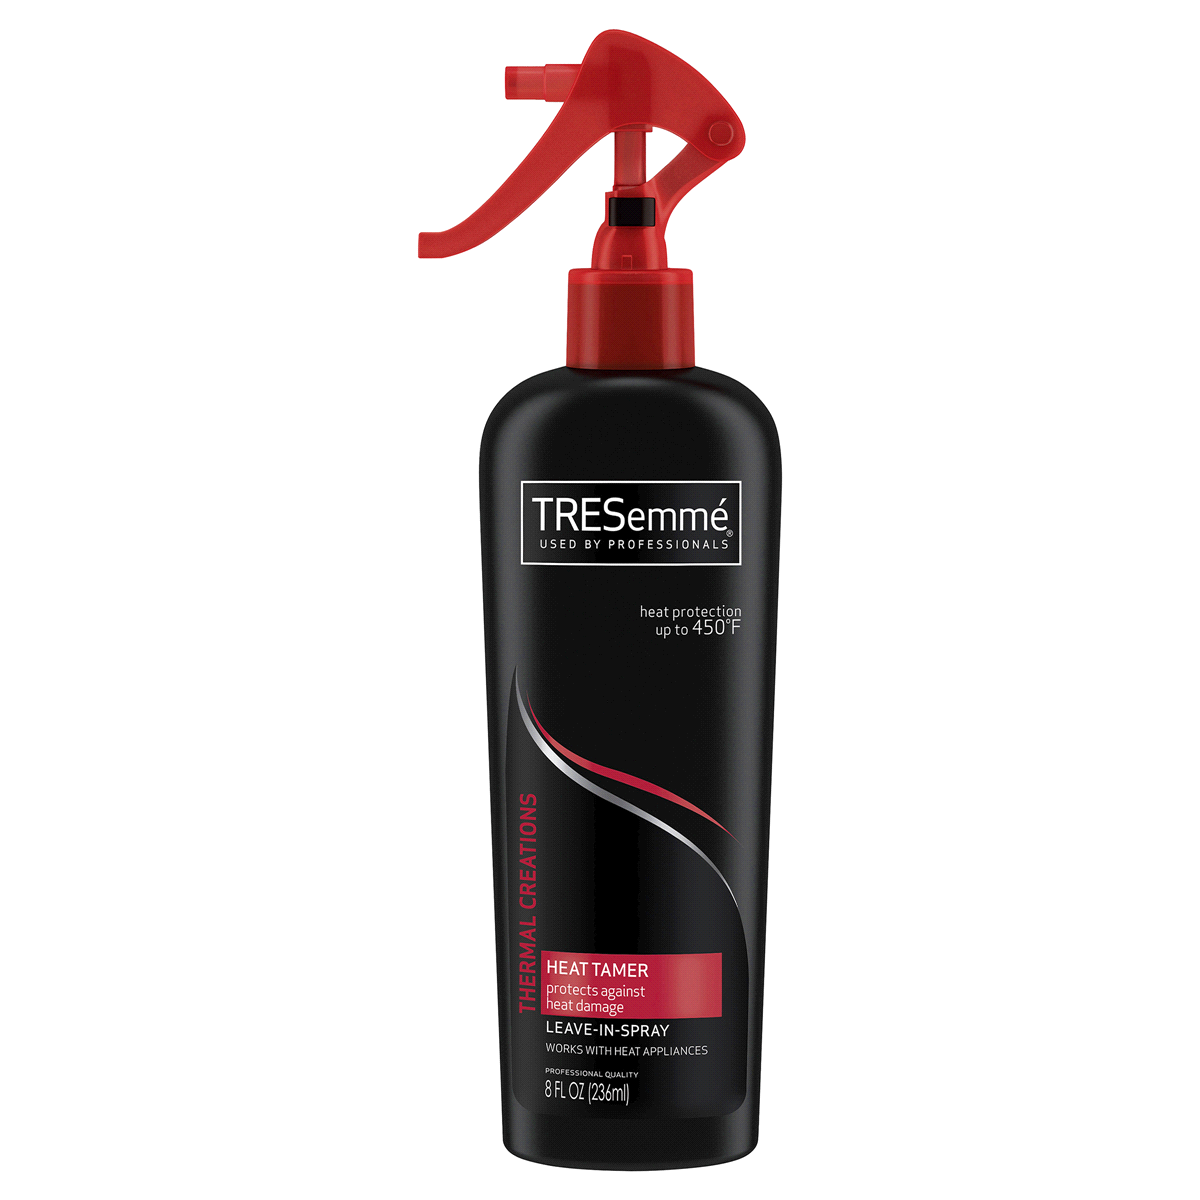 slide 10 of 92, TRESemmé Tresemme Heat Protection Hairspray - 8 fl oz, 8 fl oz